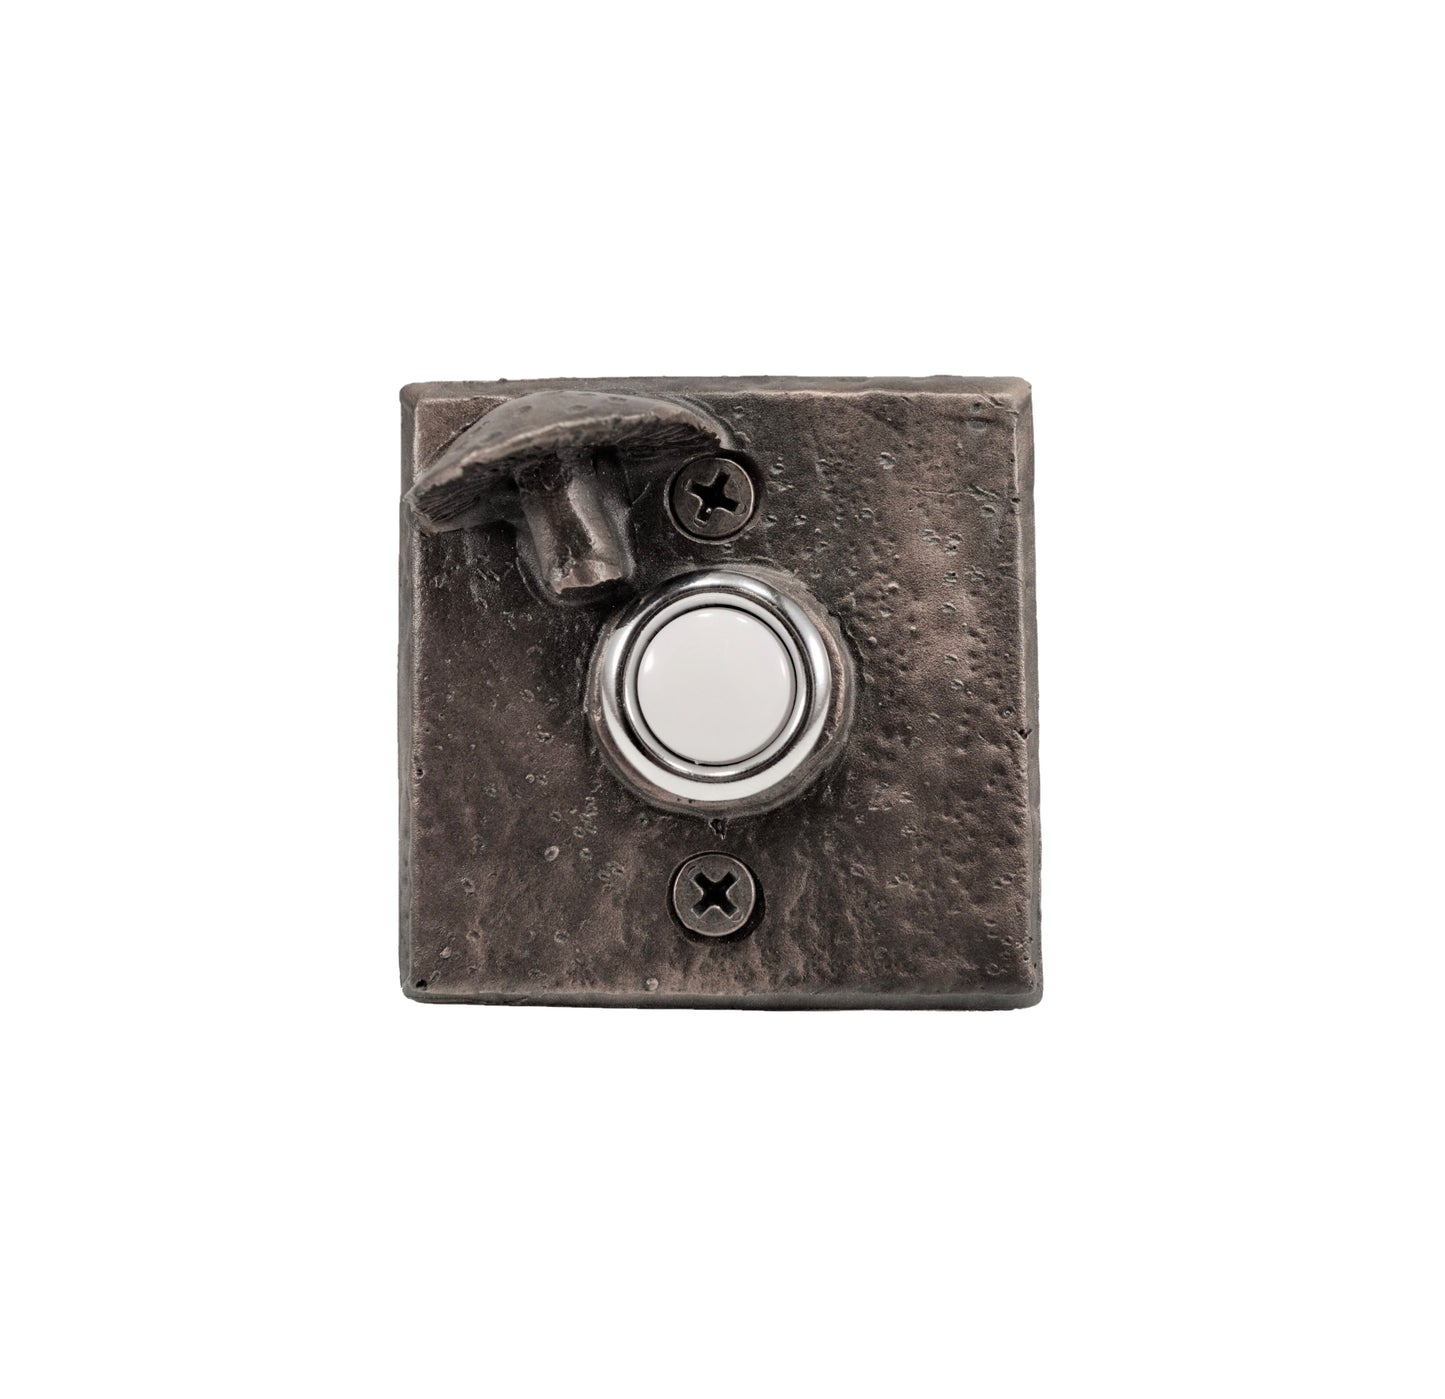 Square bronze doorbell with toadstool mushroom